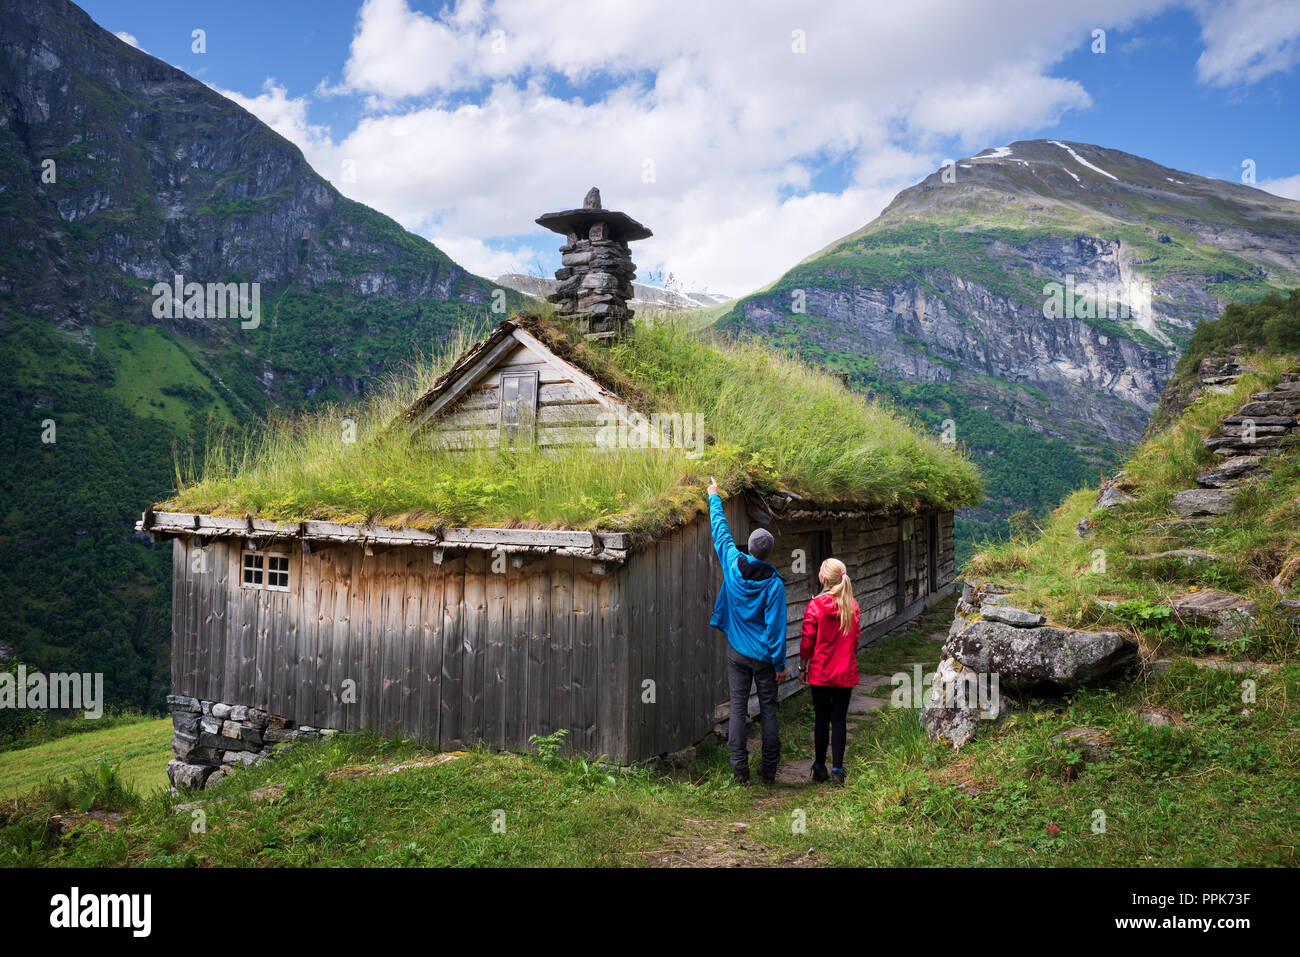 Kagefla - Berg Bauernhöfe mit Rasen Häuser entlang der Geiranger Fjord. Touristische Attraktion in der Nähe Geiranger, Norwegen. Reisende, Tradit Stockfoto